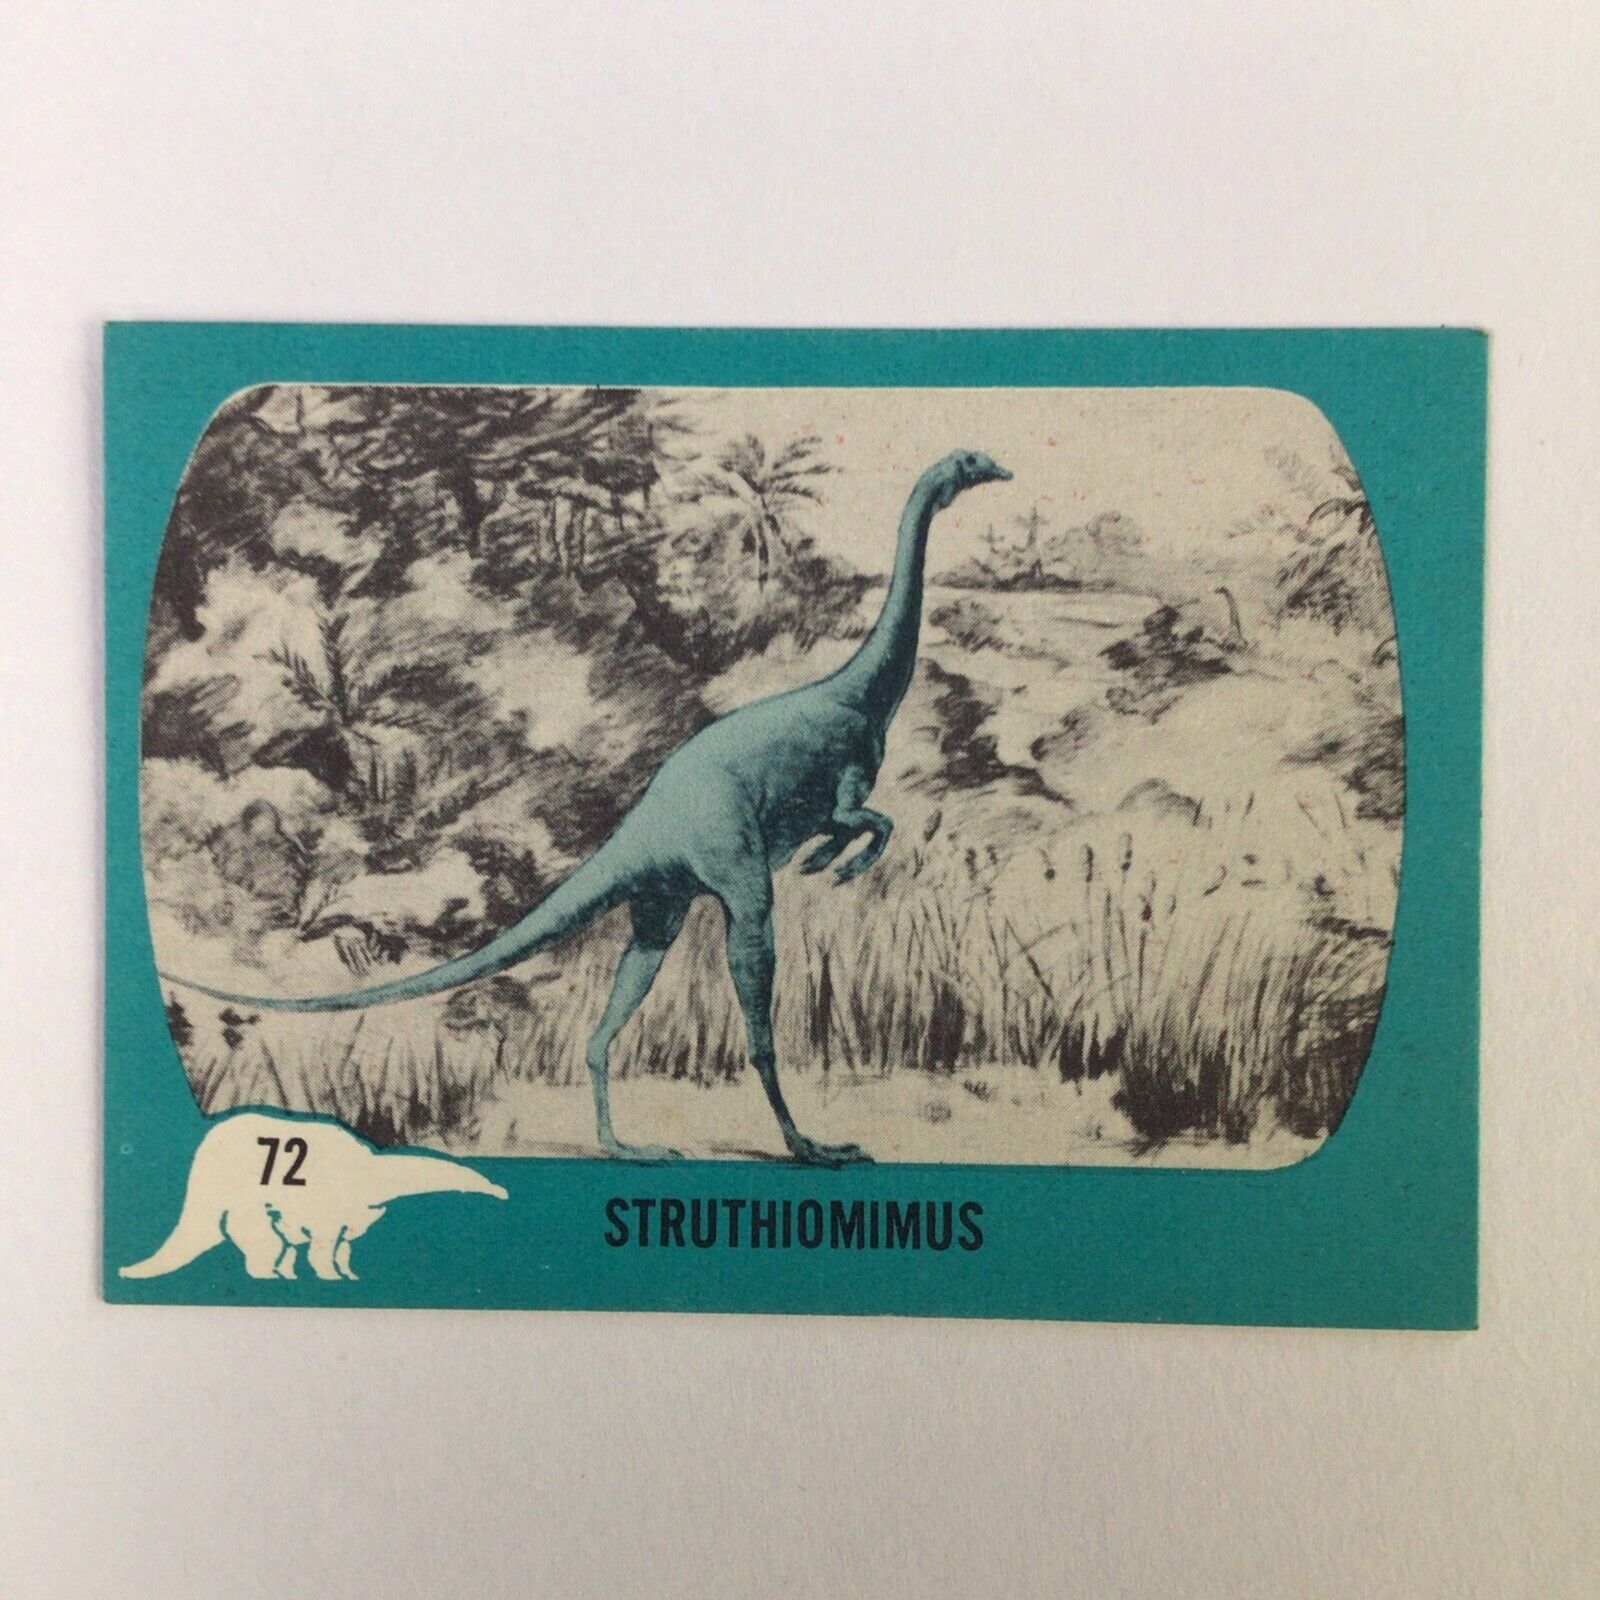 1961 Nu-Cards Dinosaur Series 72 Struthiomimus